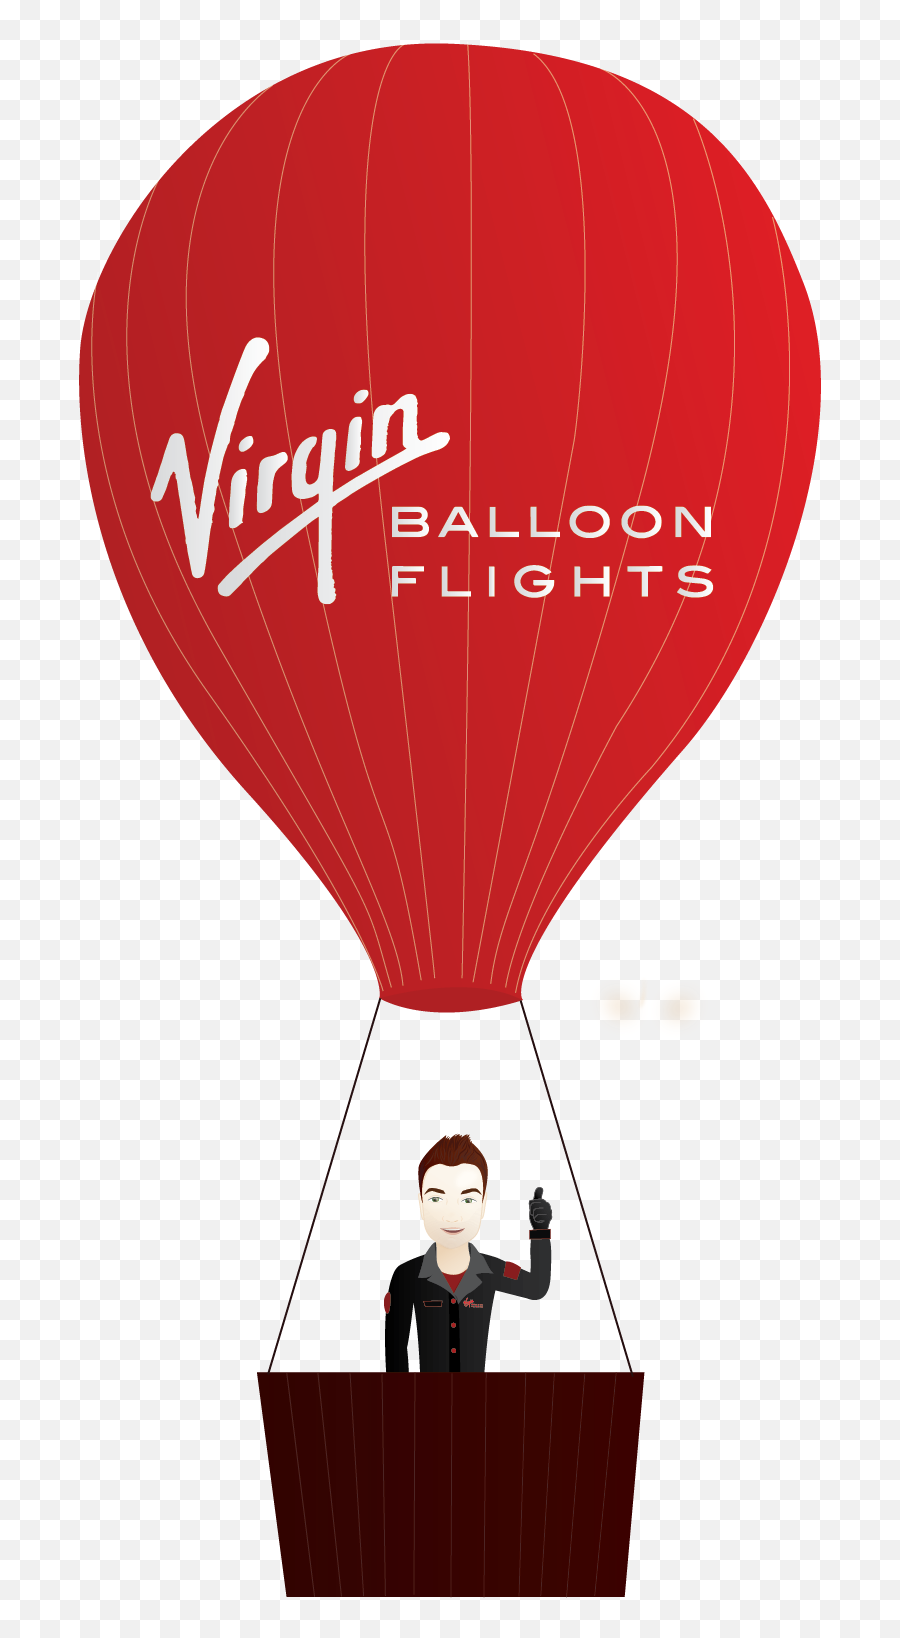 Virgin Balloon Flights Logo Transparent - Hot Air Ballooning Emoji,Hot Air Balloon Emoji